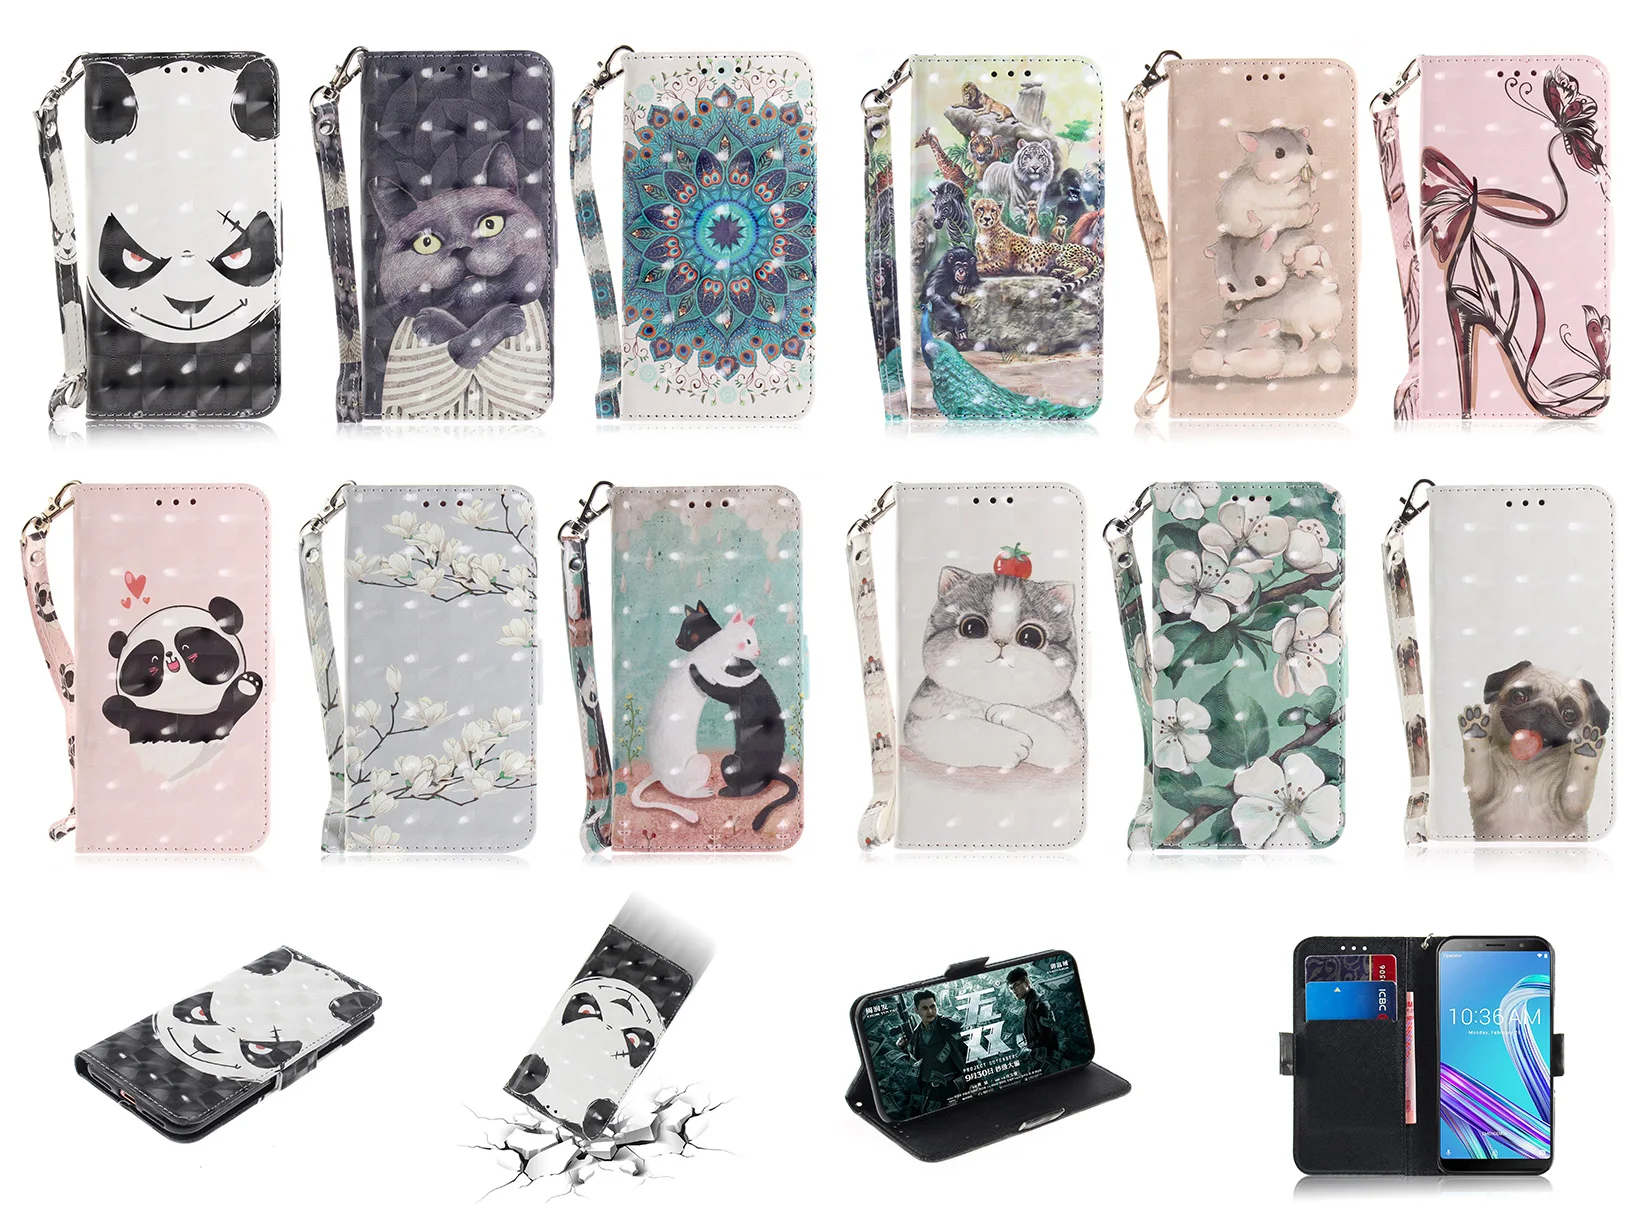 

Phone Cover For LG K40S K41S K51S K61 K31 Aristo 5 K62 K52 Q52 G7 Q Stylo 4 5 Q8 G8 ThinQ V40 K50 Q60 W10 Leather Flip Case